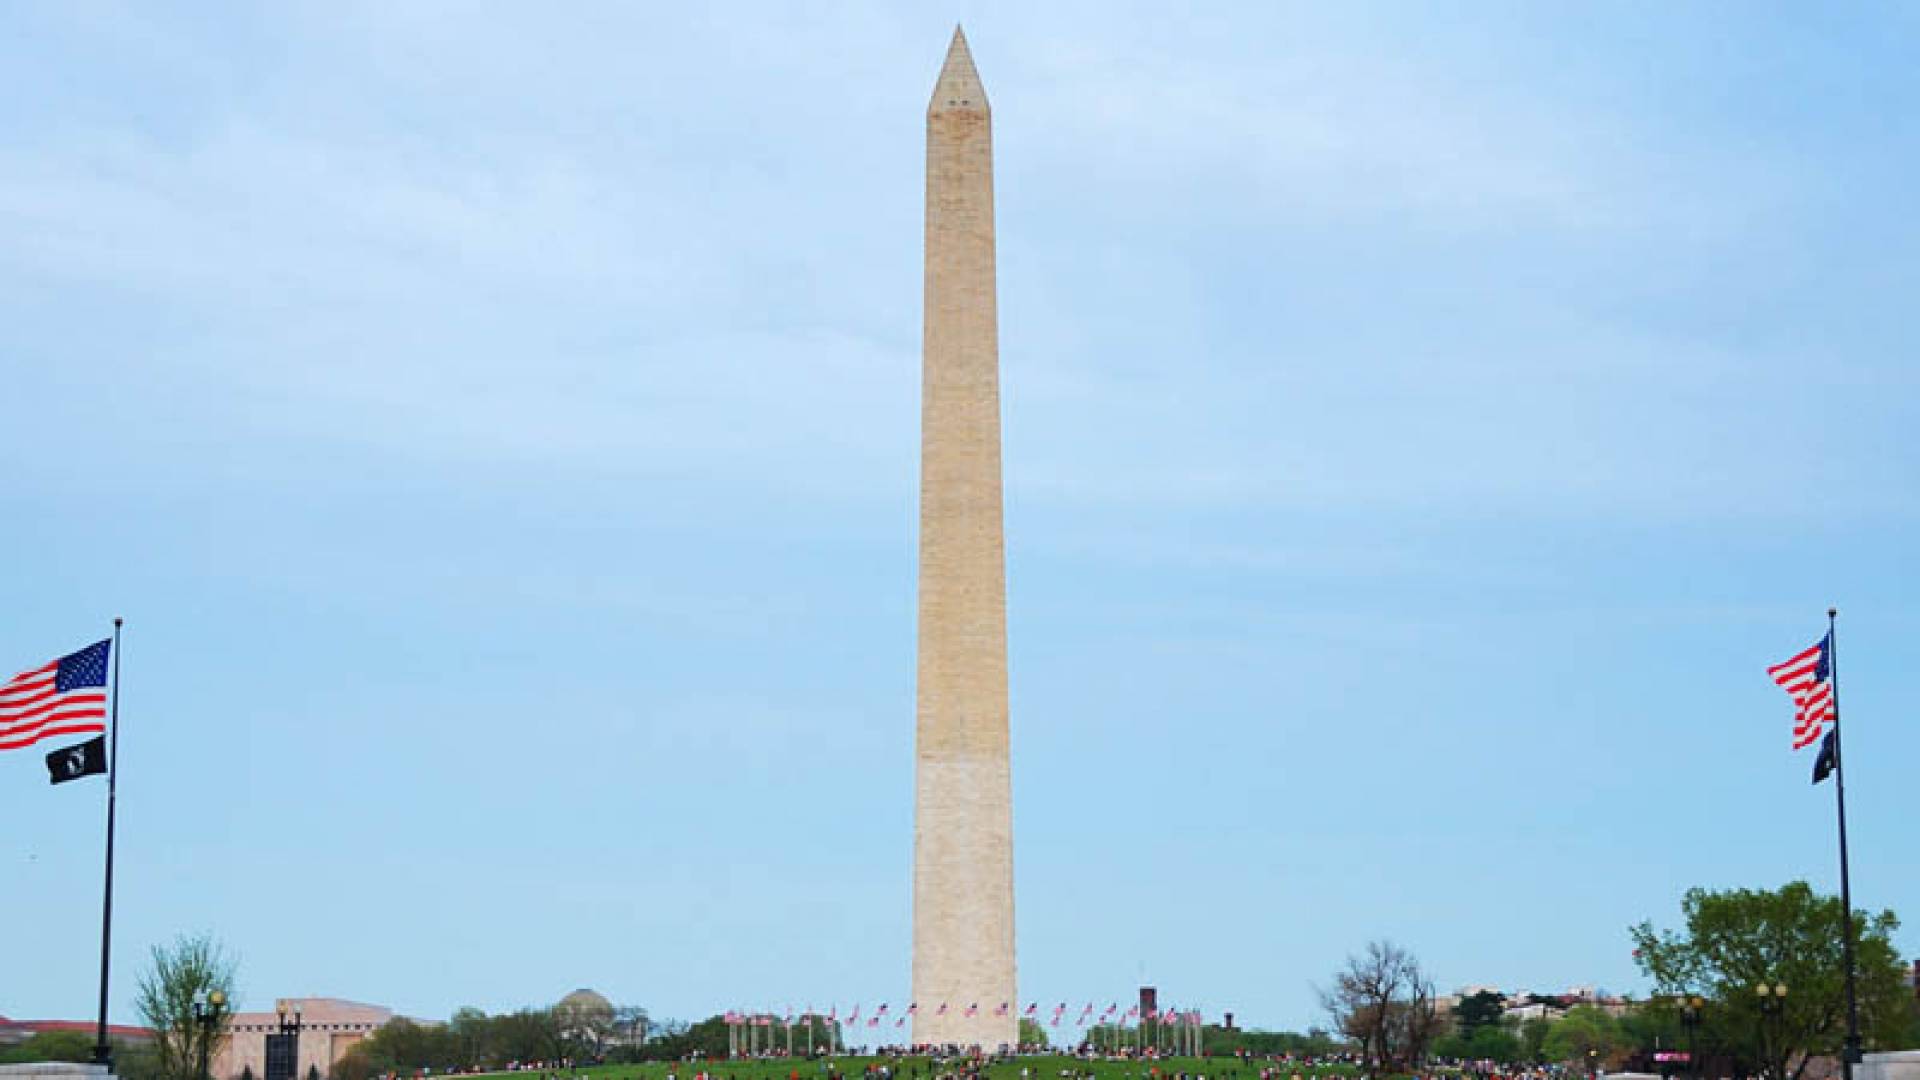 WASHINGTON MEMORIAL, Washington Memorial